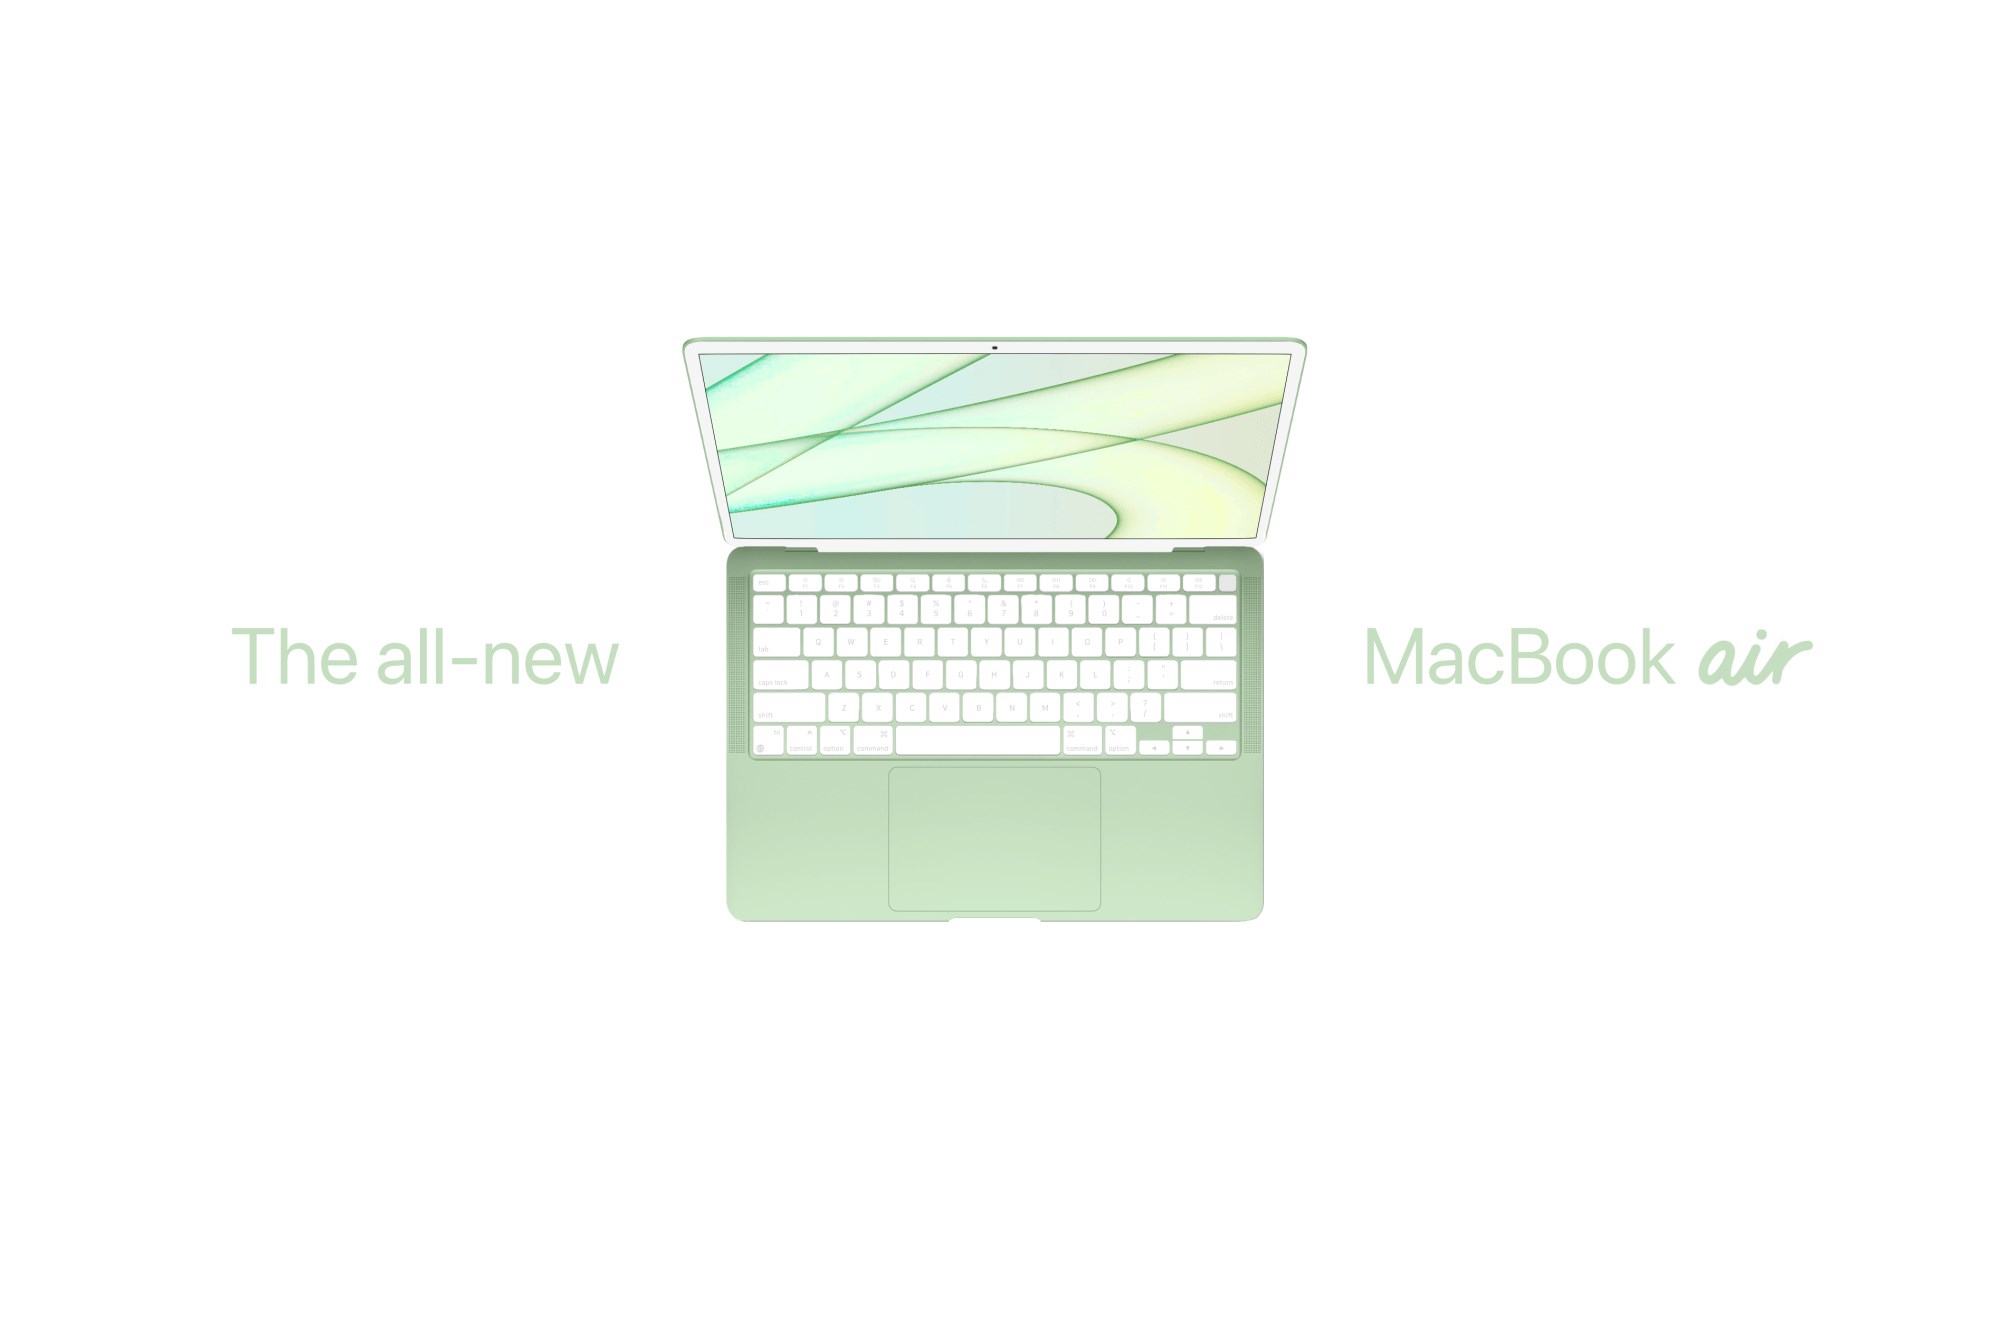 M2 işlemcili renkli Macbook Air geliyor. Ne zaman çıkış yapacak?